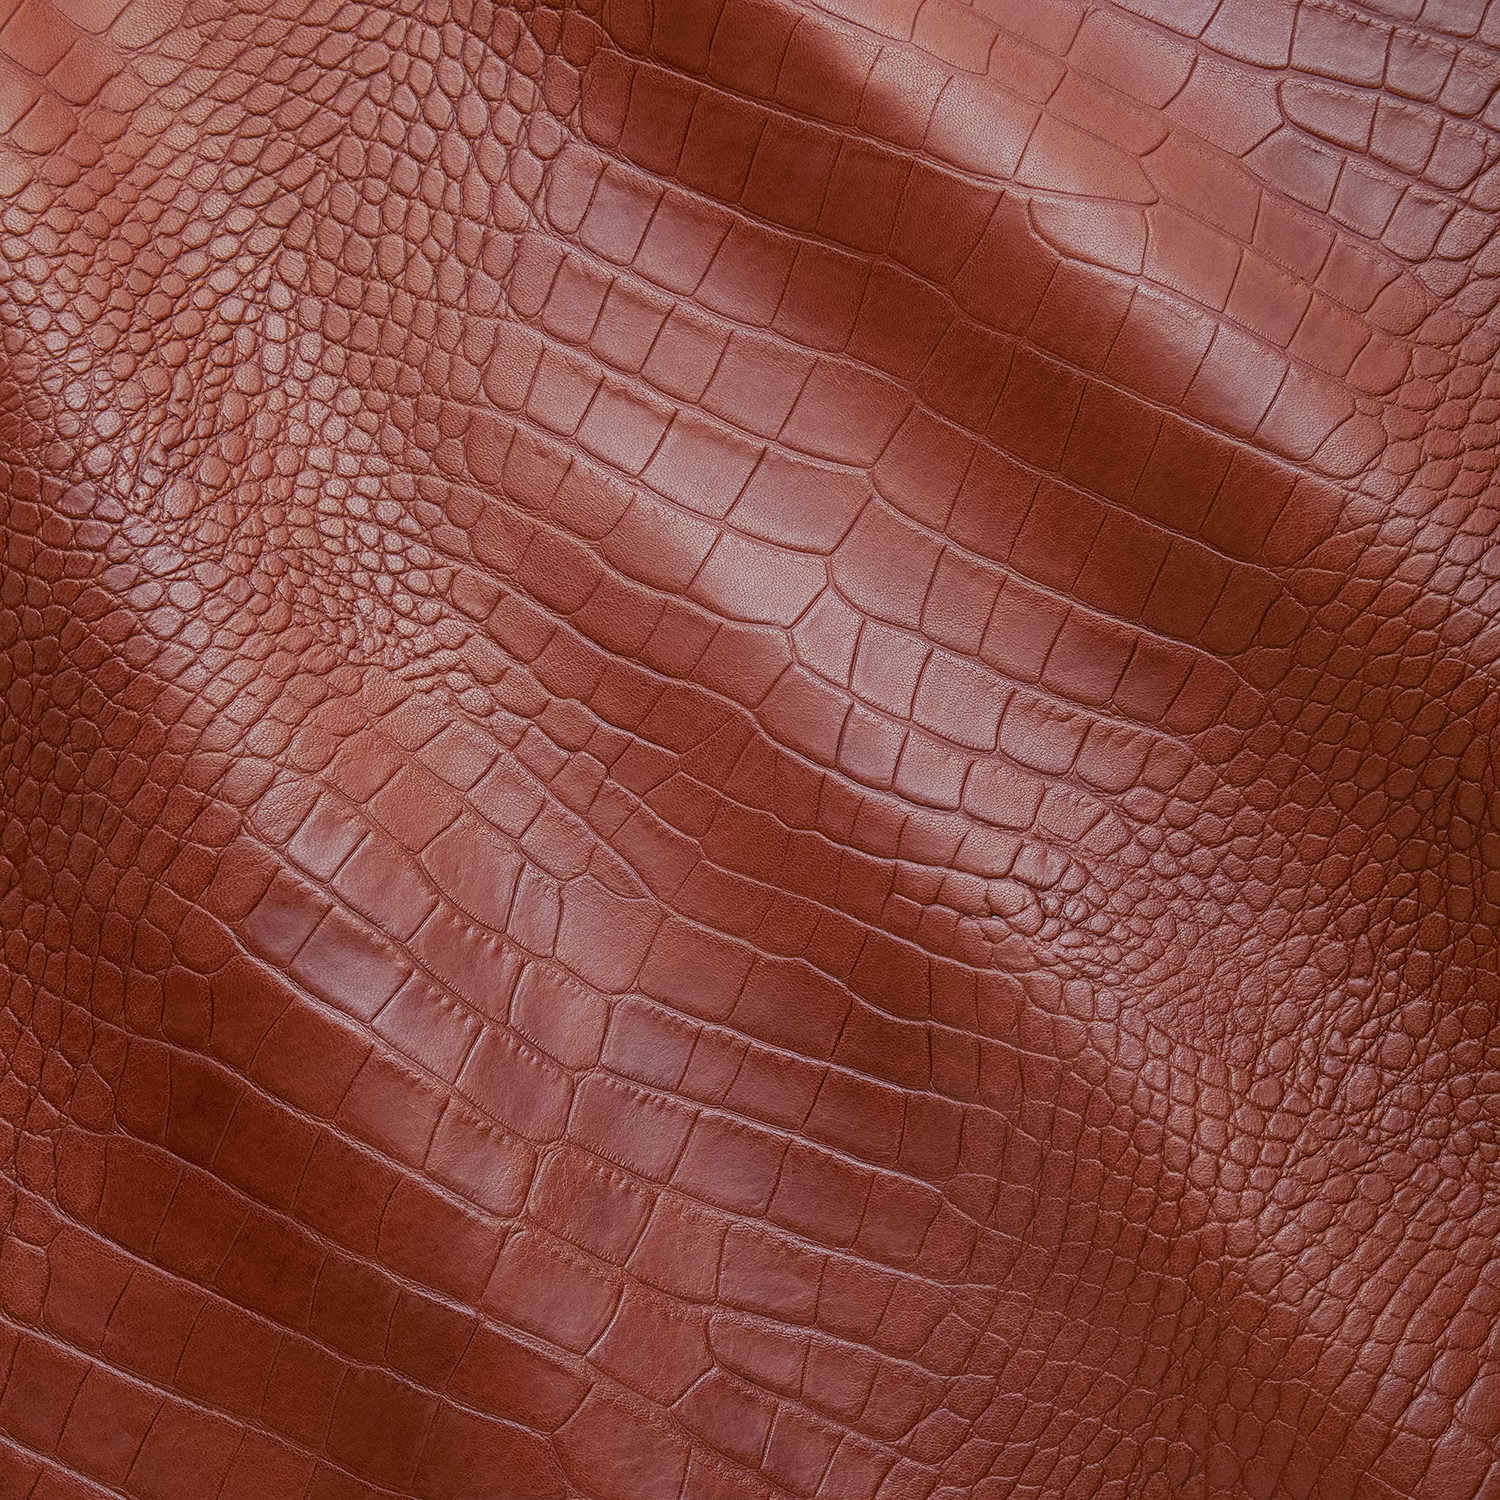  Enamel & Glitter Alligator Grain Embossed Leather